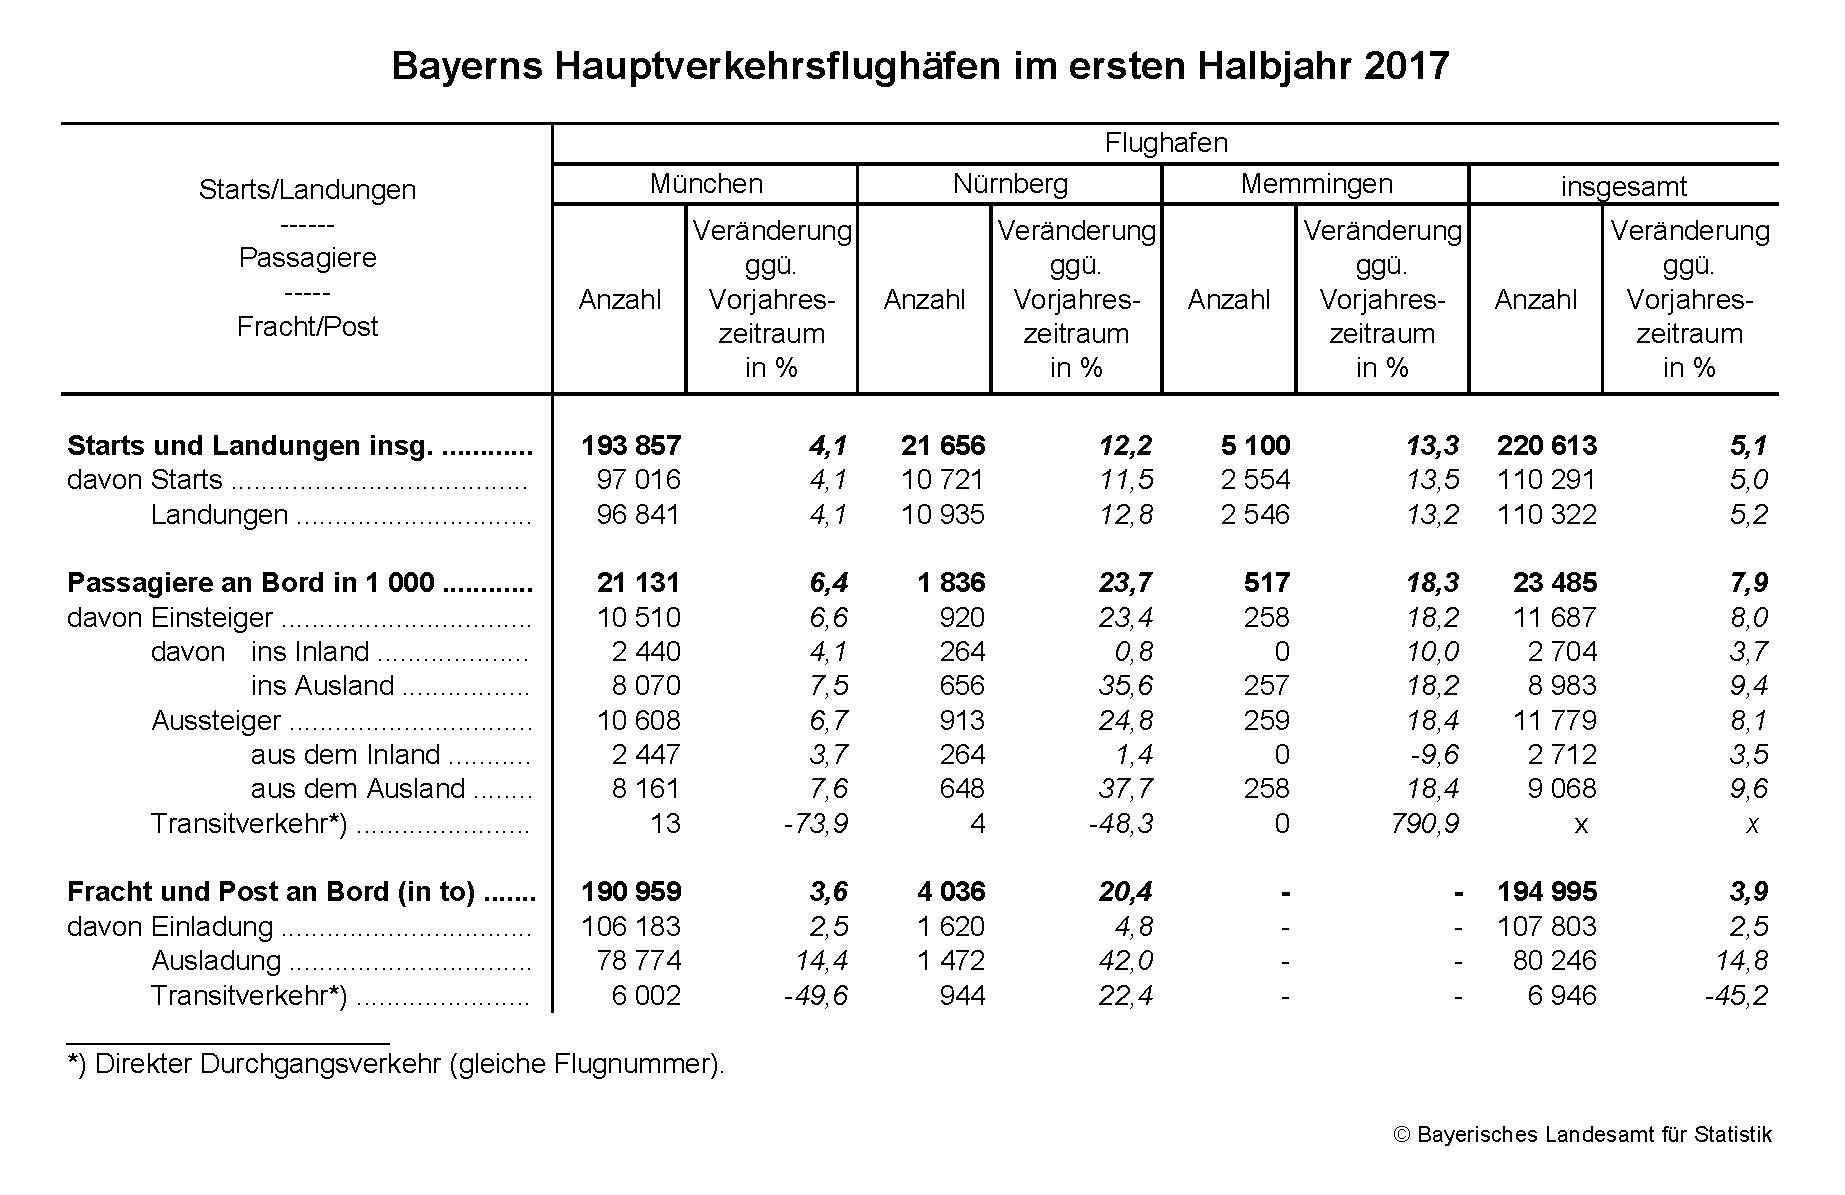 Bayerns Hauptverkehrsflughäfen im ersten Halbjahr 2017